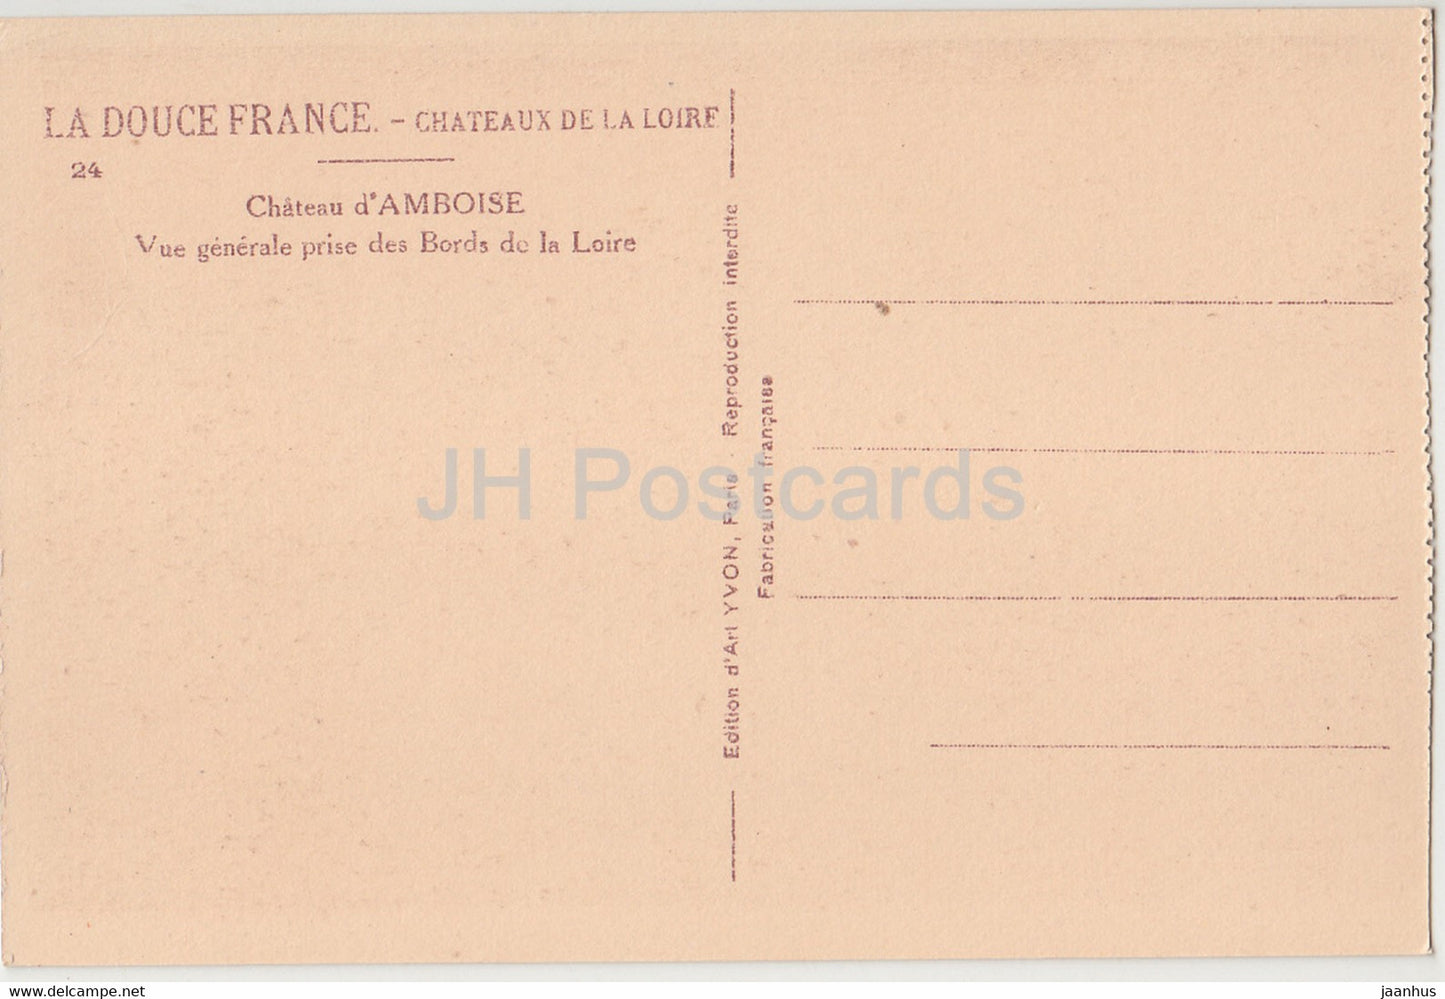 Chateau d'Amboise - Vue Generale prise des Bords de la Loire - 24 - Schloss - alte Postkarte - Frankreich - unbenutzt